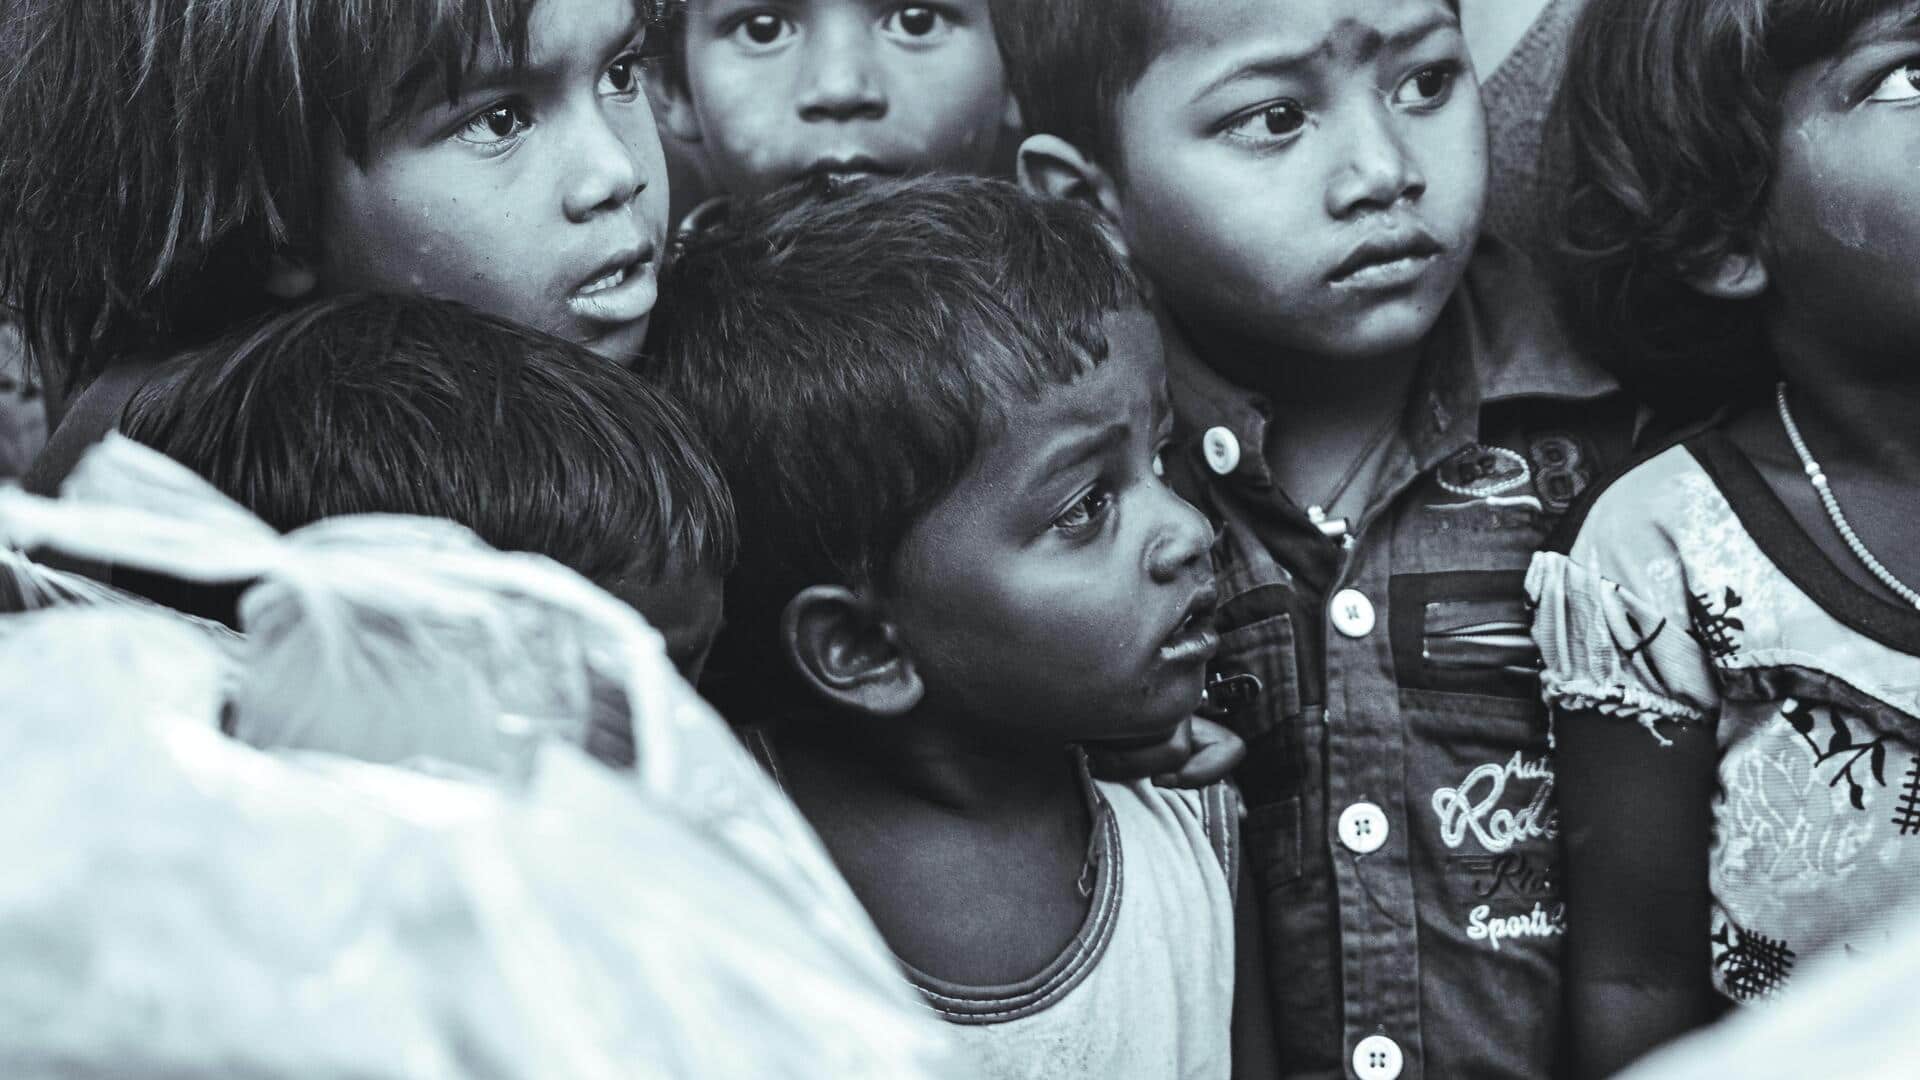 मध्य प्रदेश में 3 महीने में 78,000 कुपोषित बच्चे मिले, 21,000 से अधिक अति कुपोषित